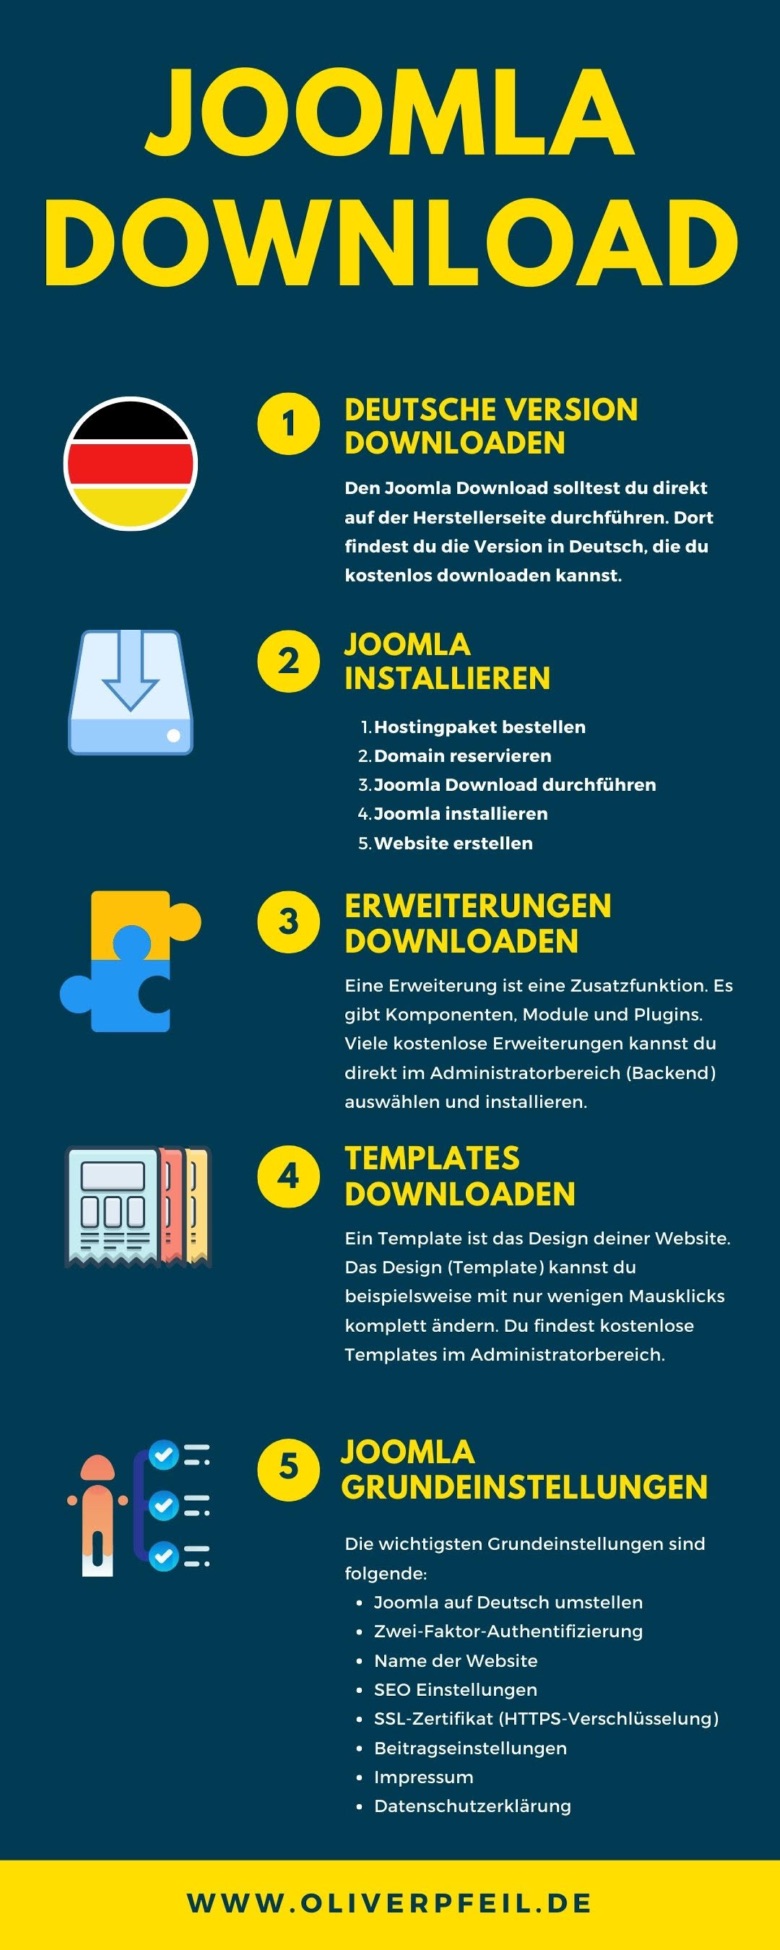 Joomla Download auf Deutsch